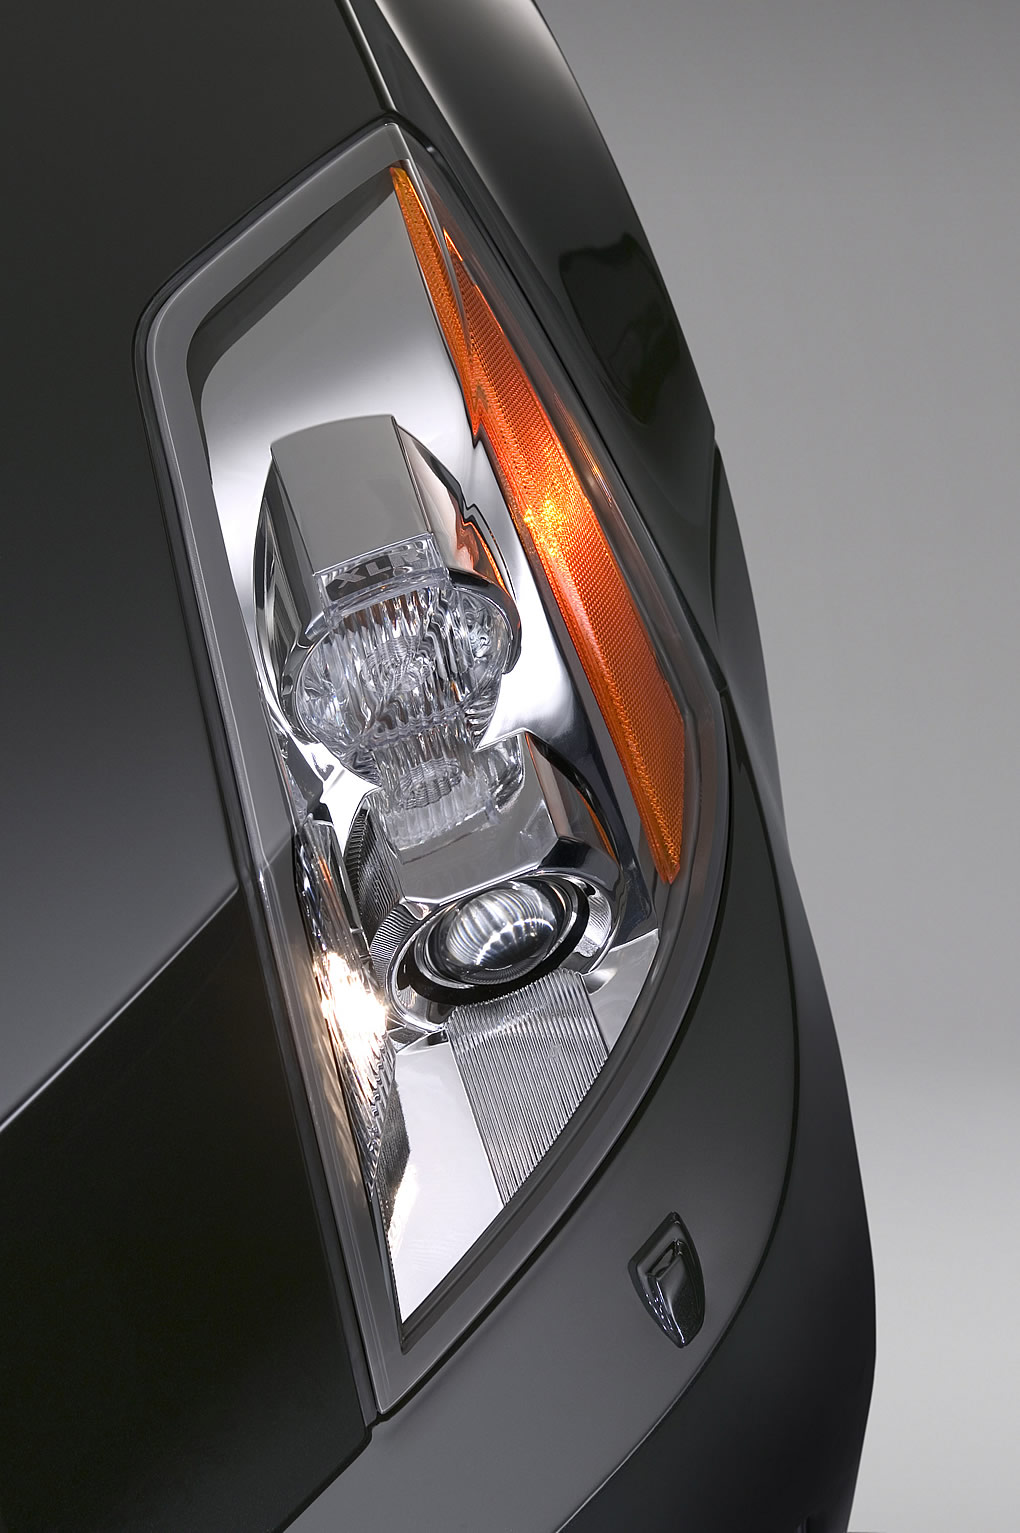 2006 Cadillac Star Black Limited Edition XLR Headlight